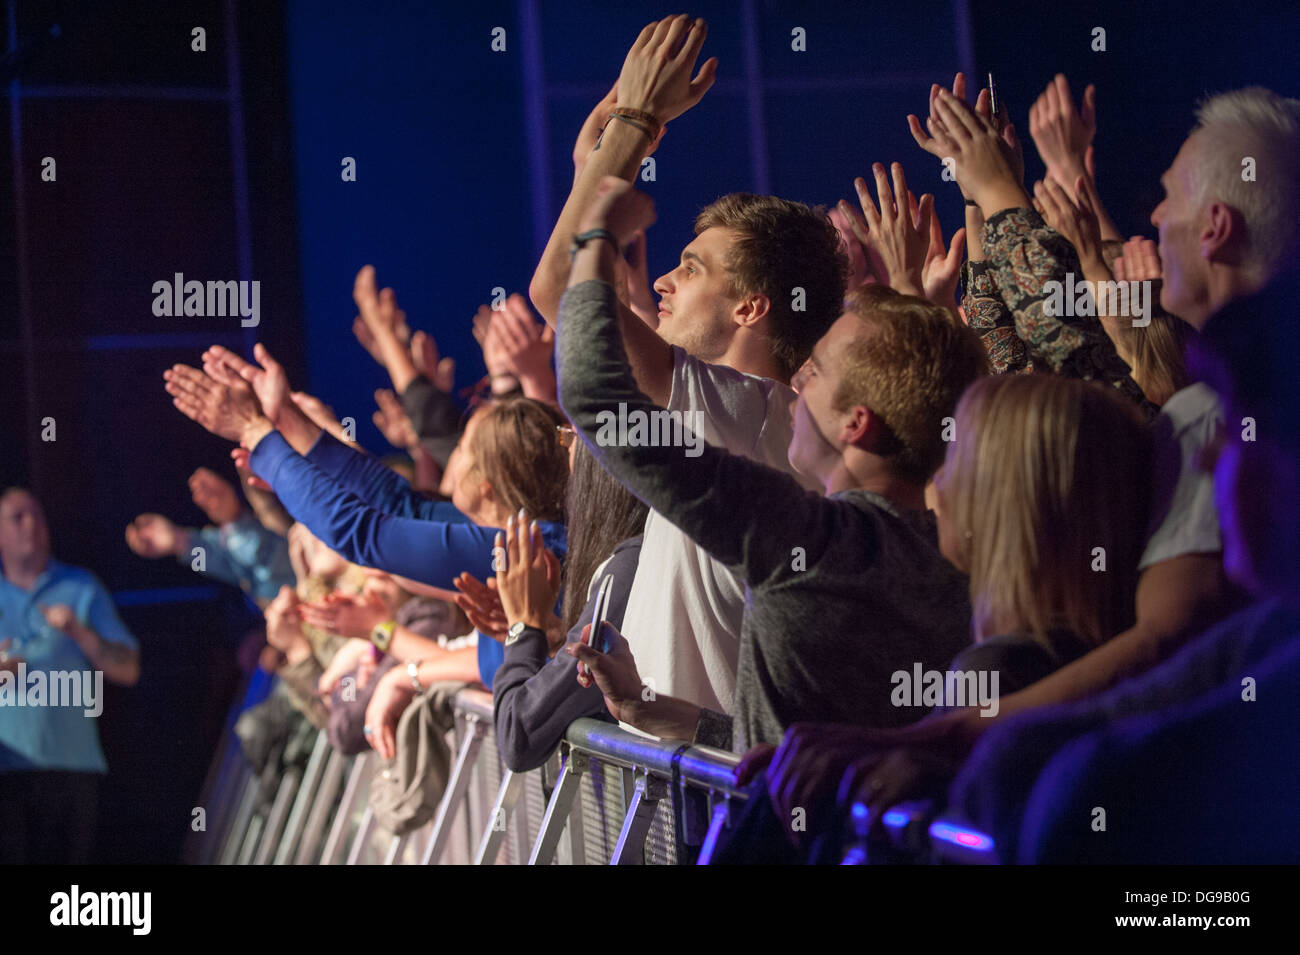 Jóvenes fans de la música en un concierto en vivo aplastado contra la barrera en el frente del escenario animando, aplaudiendo y gritando en una banda en el escenario Foto de stock